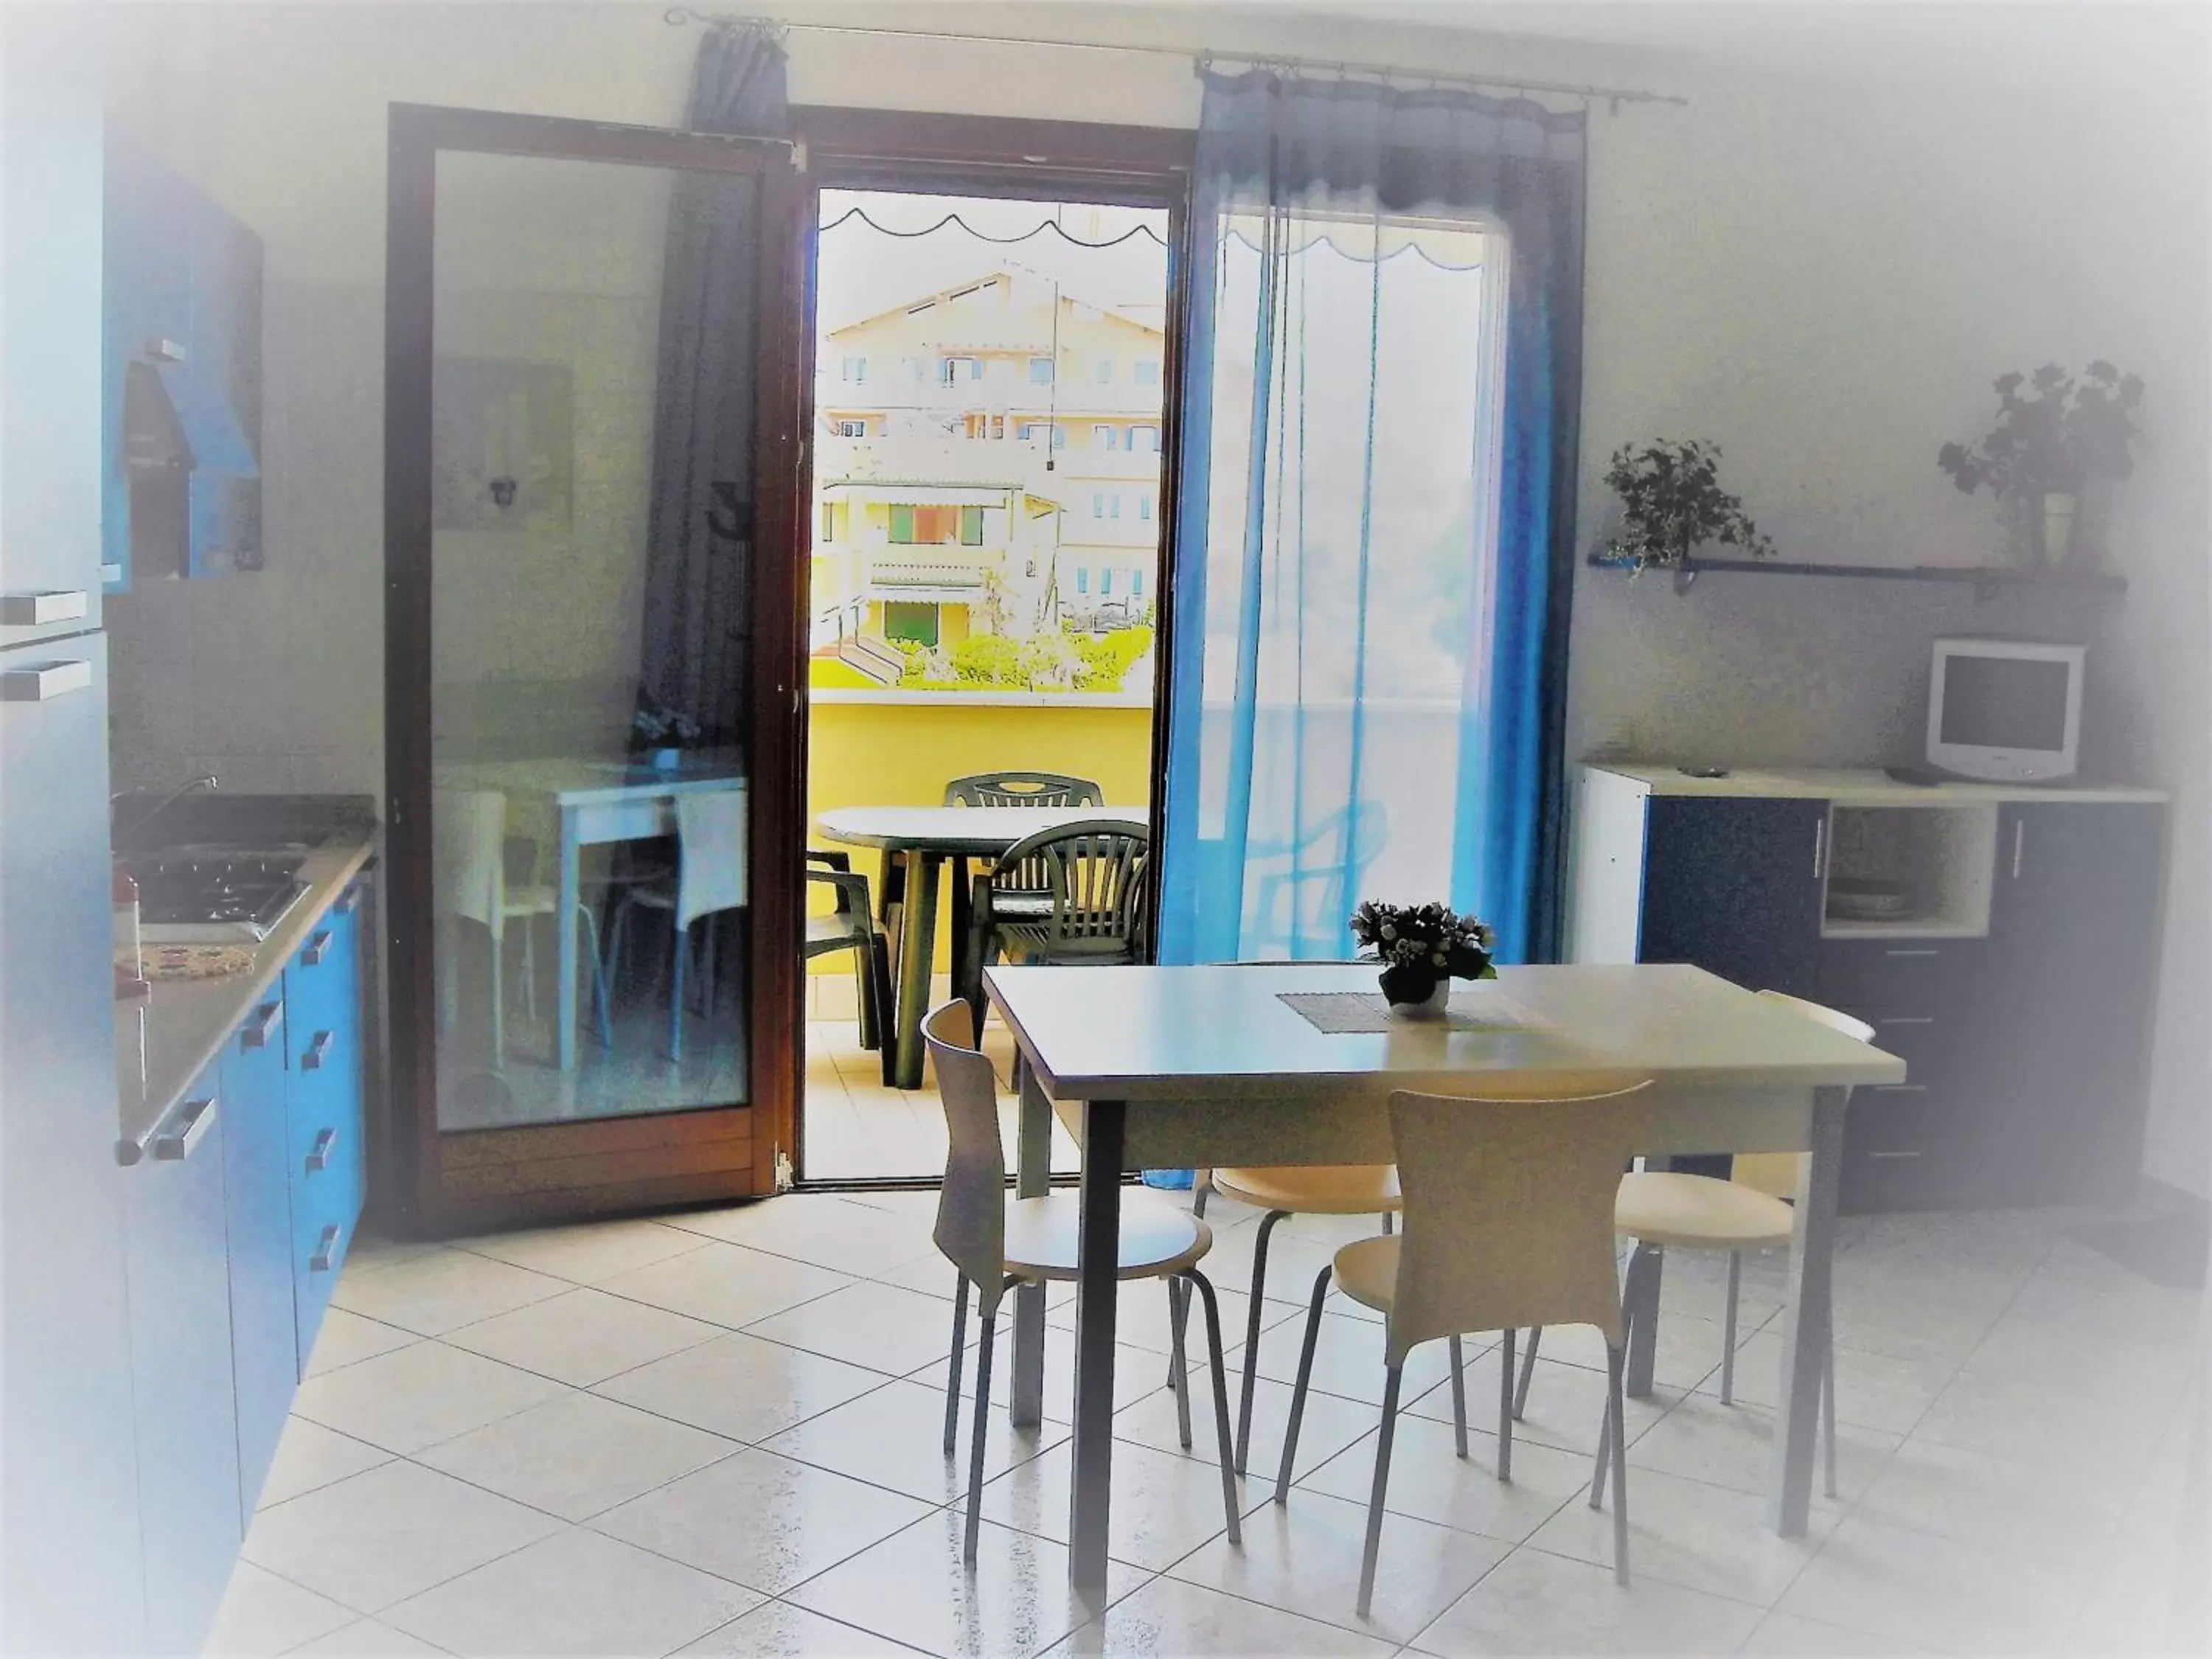 Dining Area in Villaggio dei Fiori Apart- Hotel 3 Stars - Family Resort